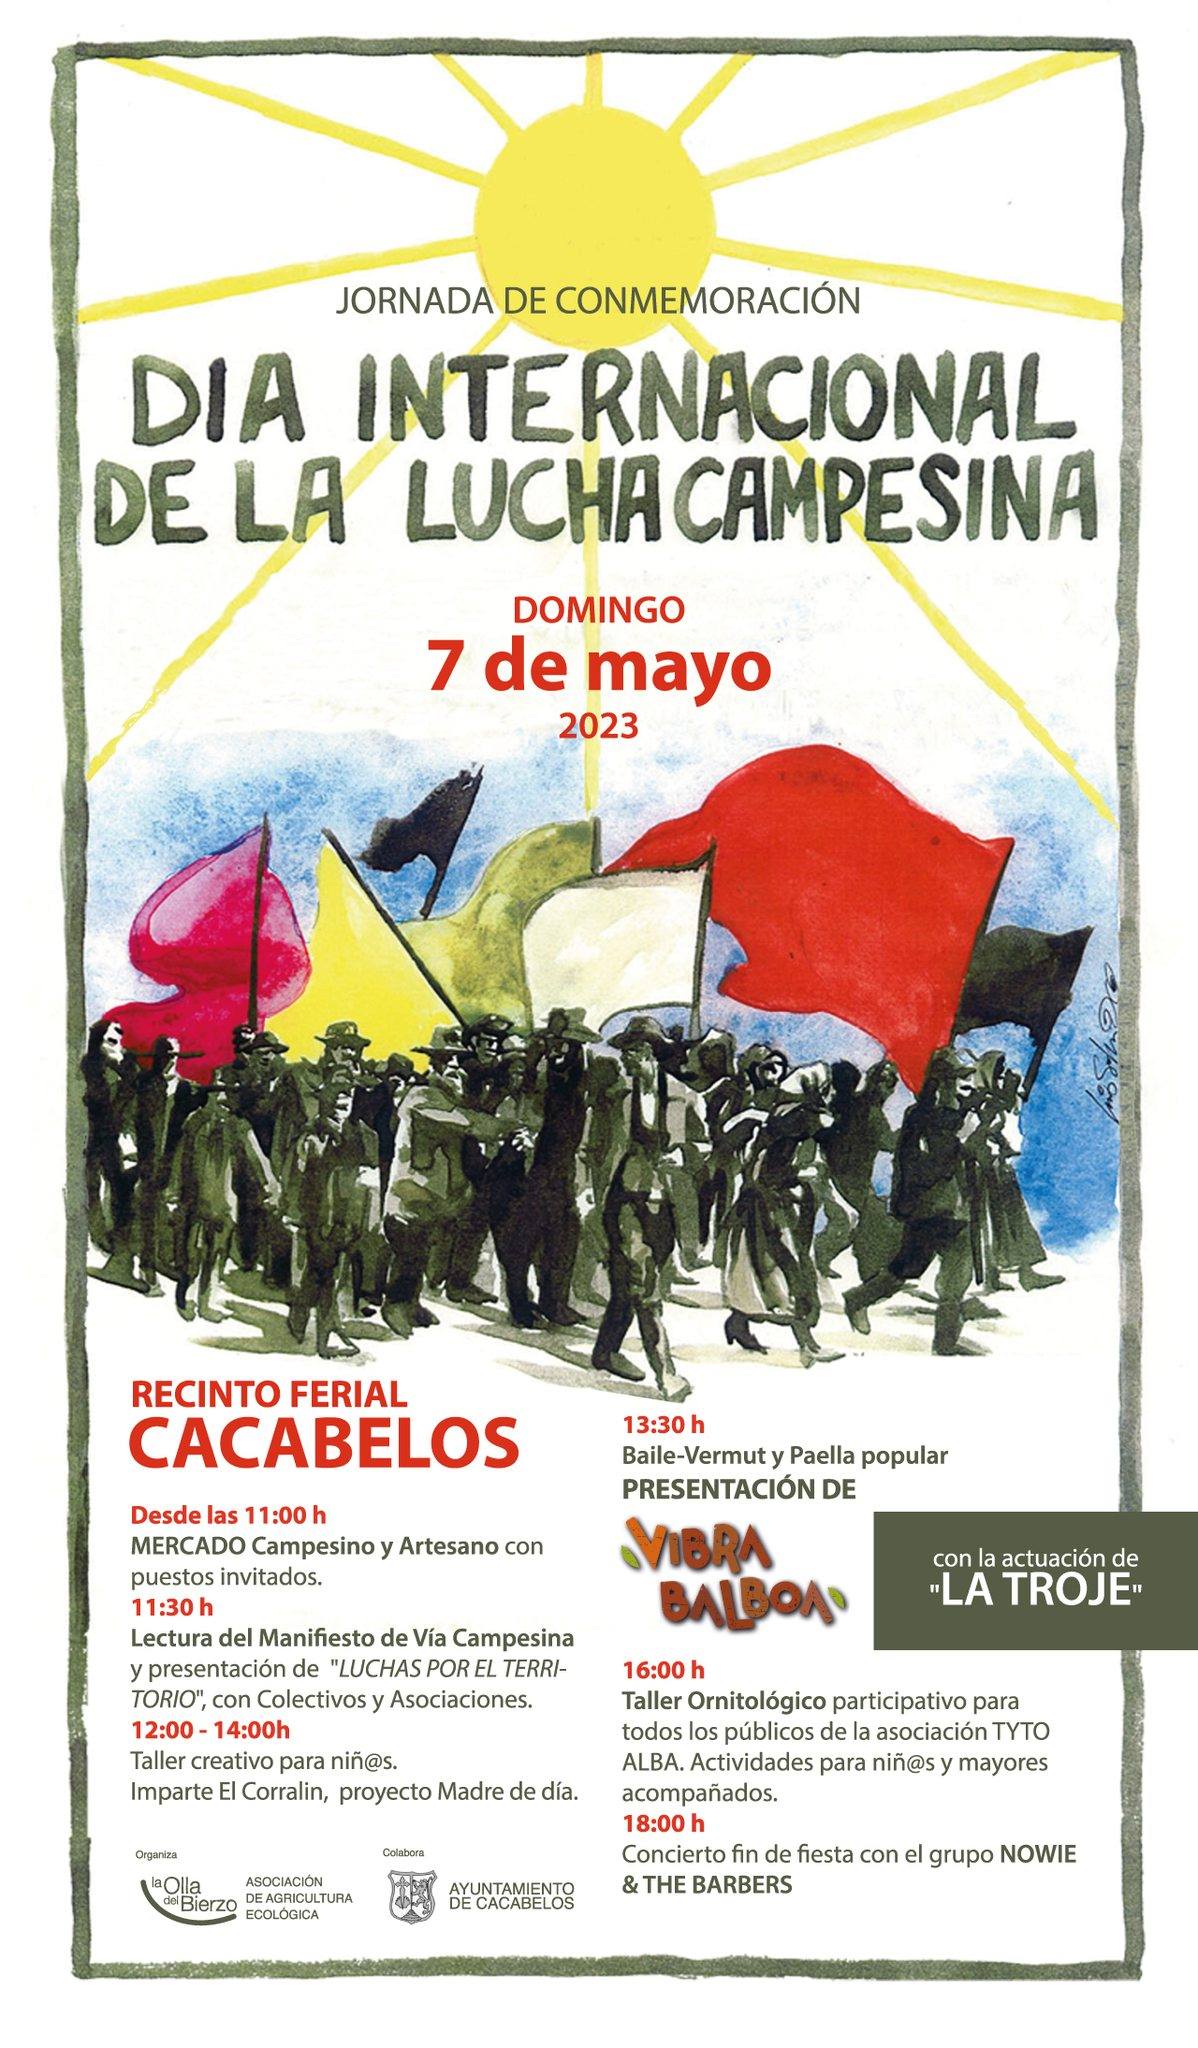 El mercado de Cacabelos acoge en mayo día internacional de la lucha campesina en el recinto ferial de Cacabelos 2